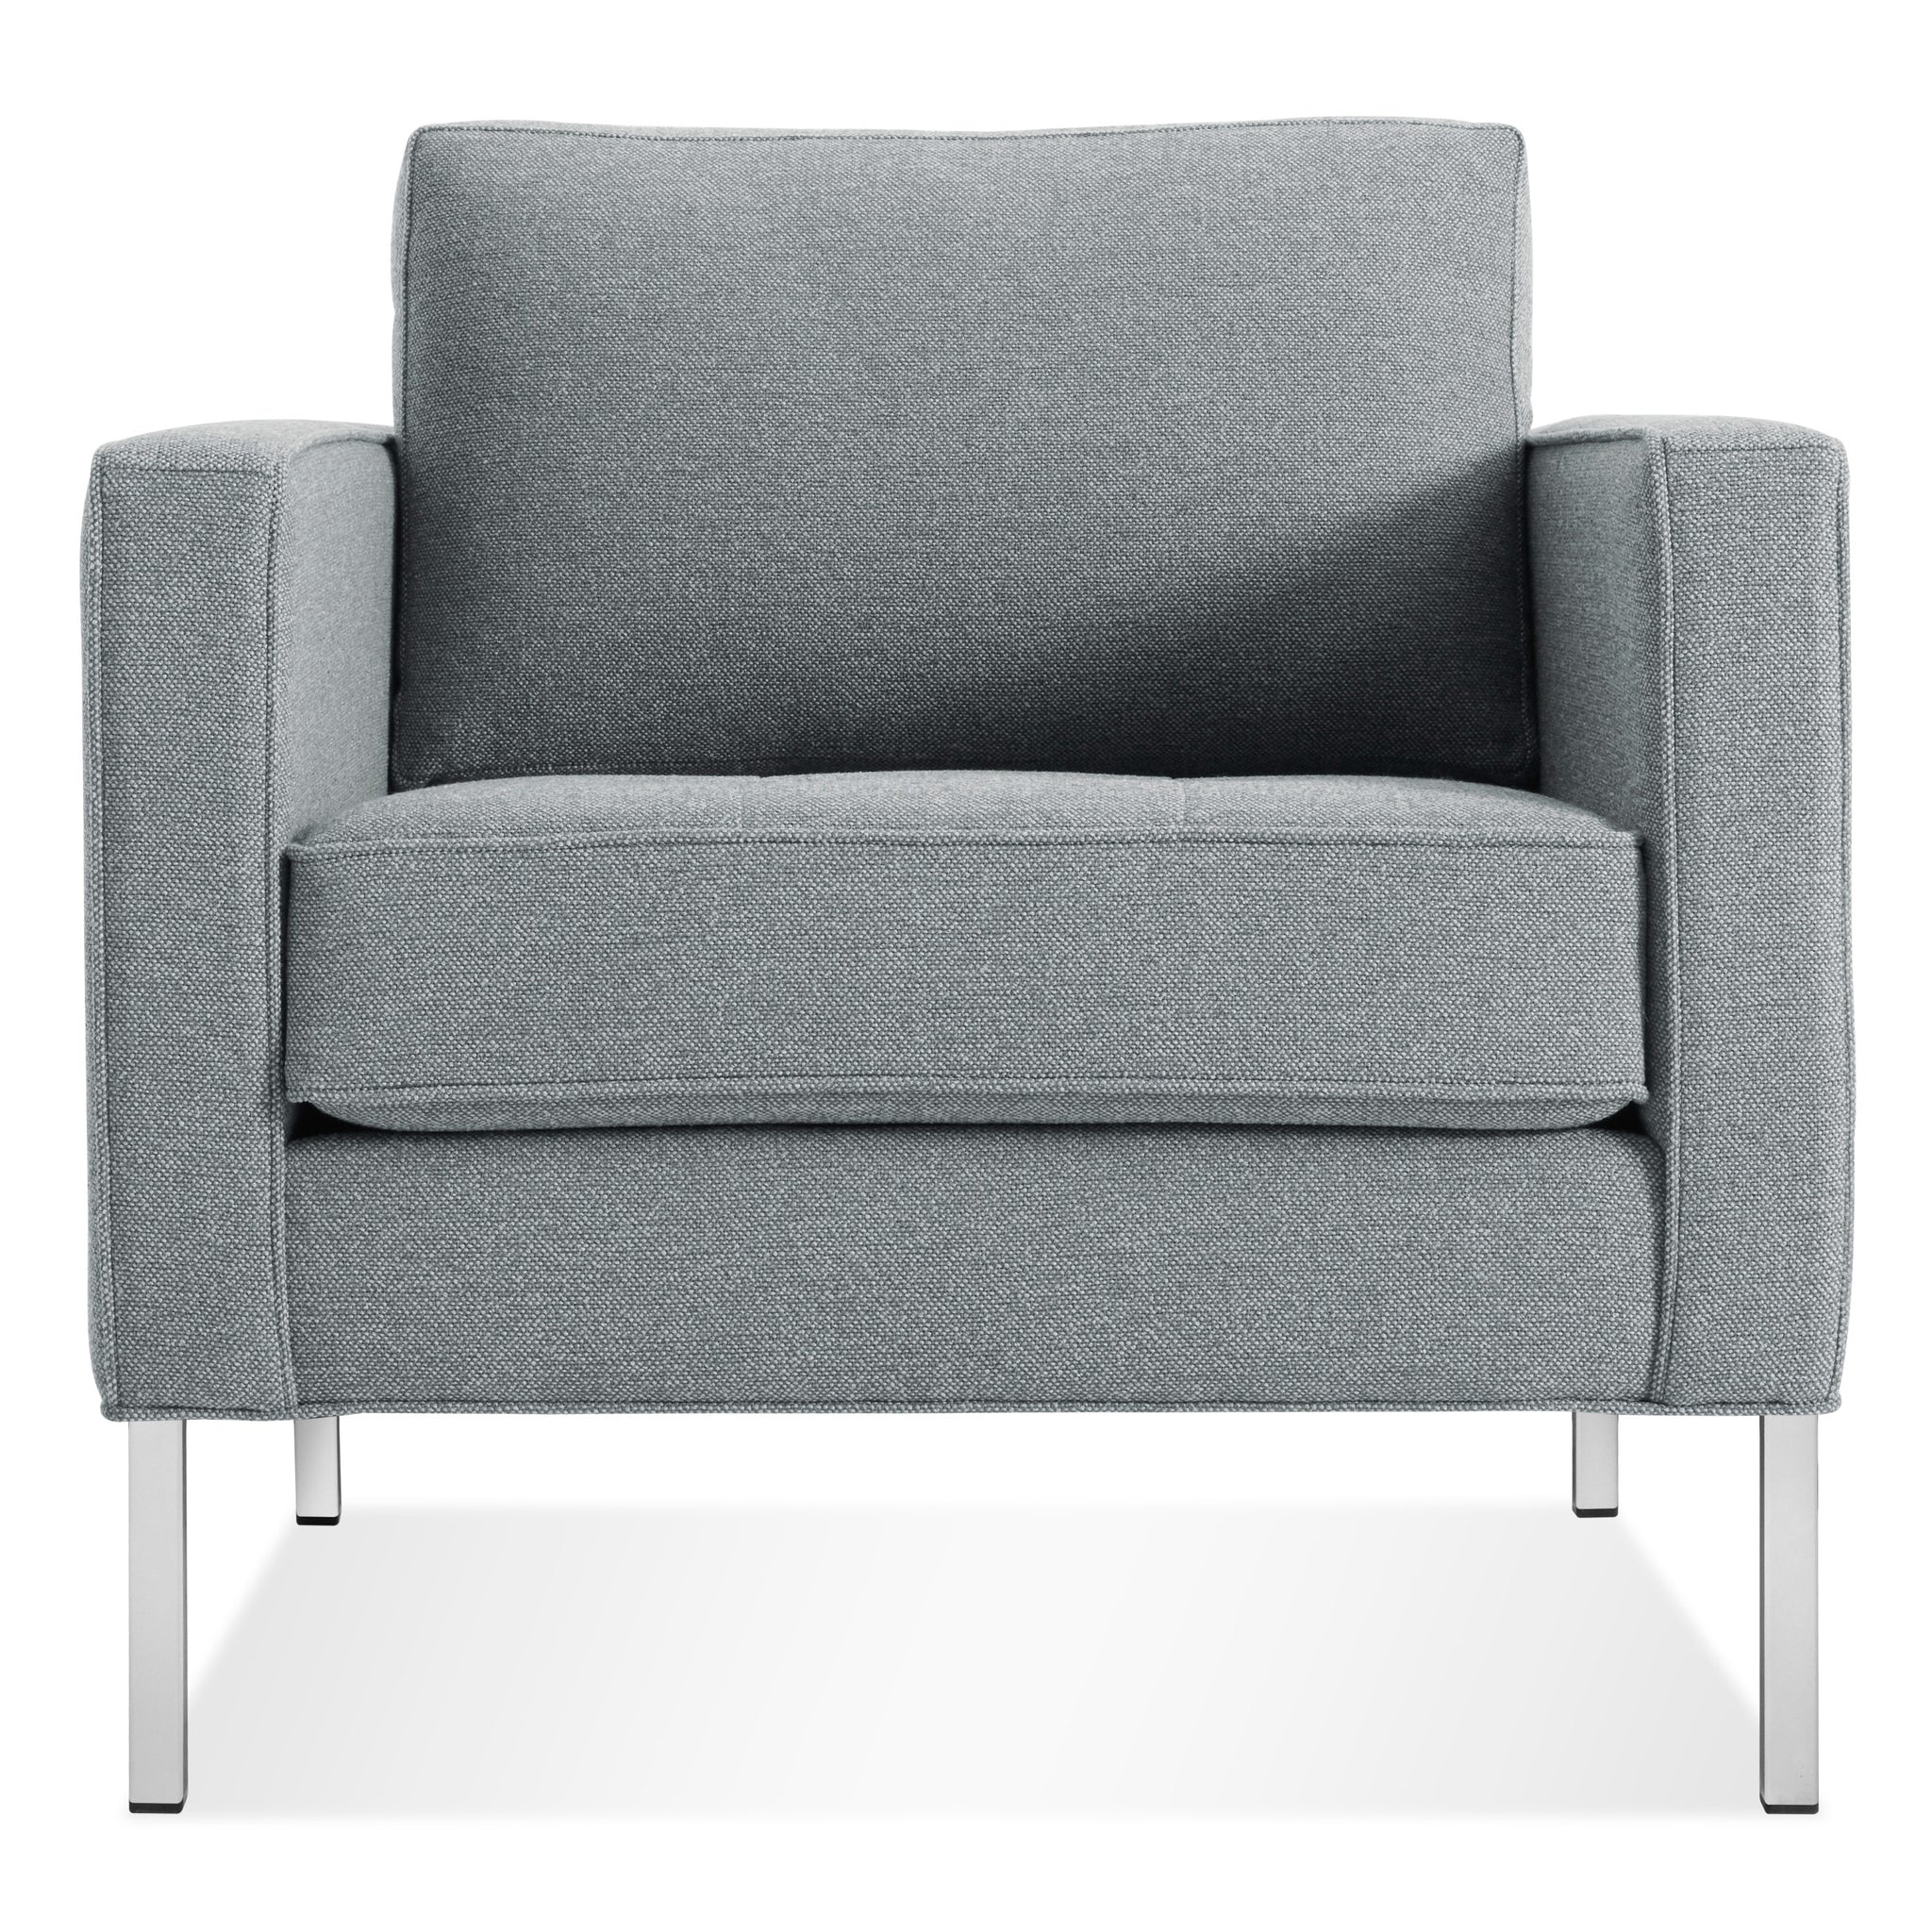 blu dot paramount lounge chair sanford ceramic stainless steel